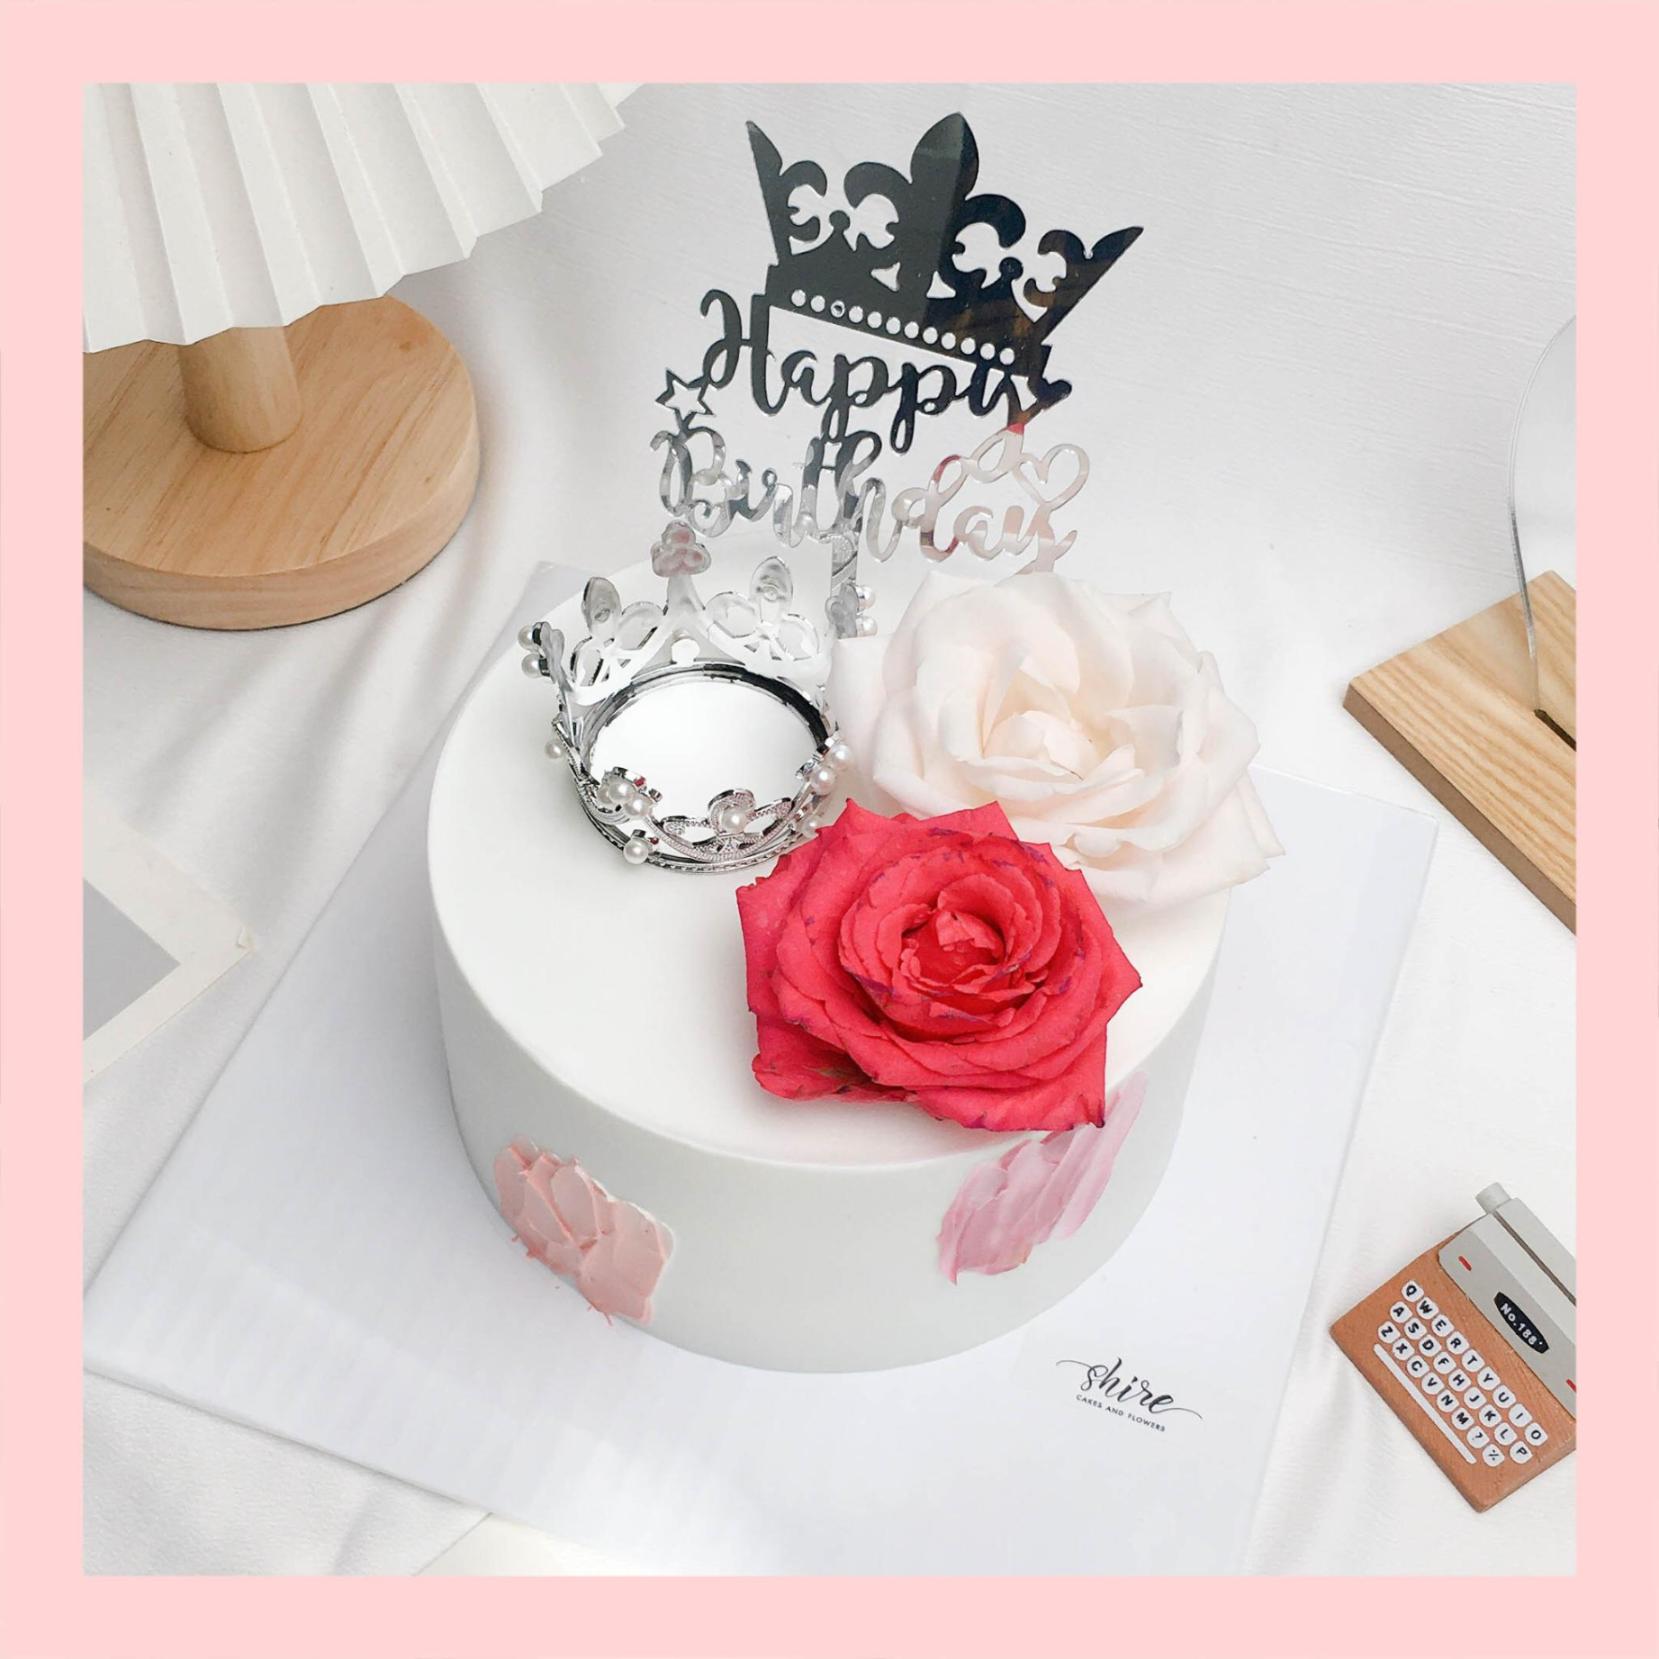 Bánh kem tô điểm vương vãi miện và hoa tươi tỉnh - Bánh kem sinh nhật mang đến nữ